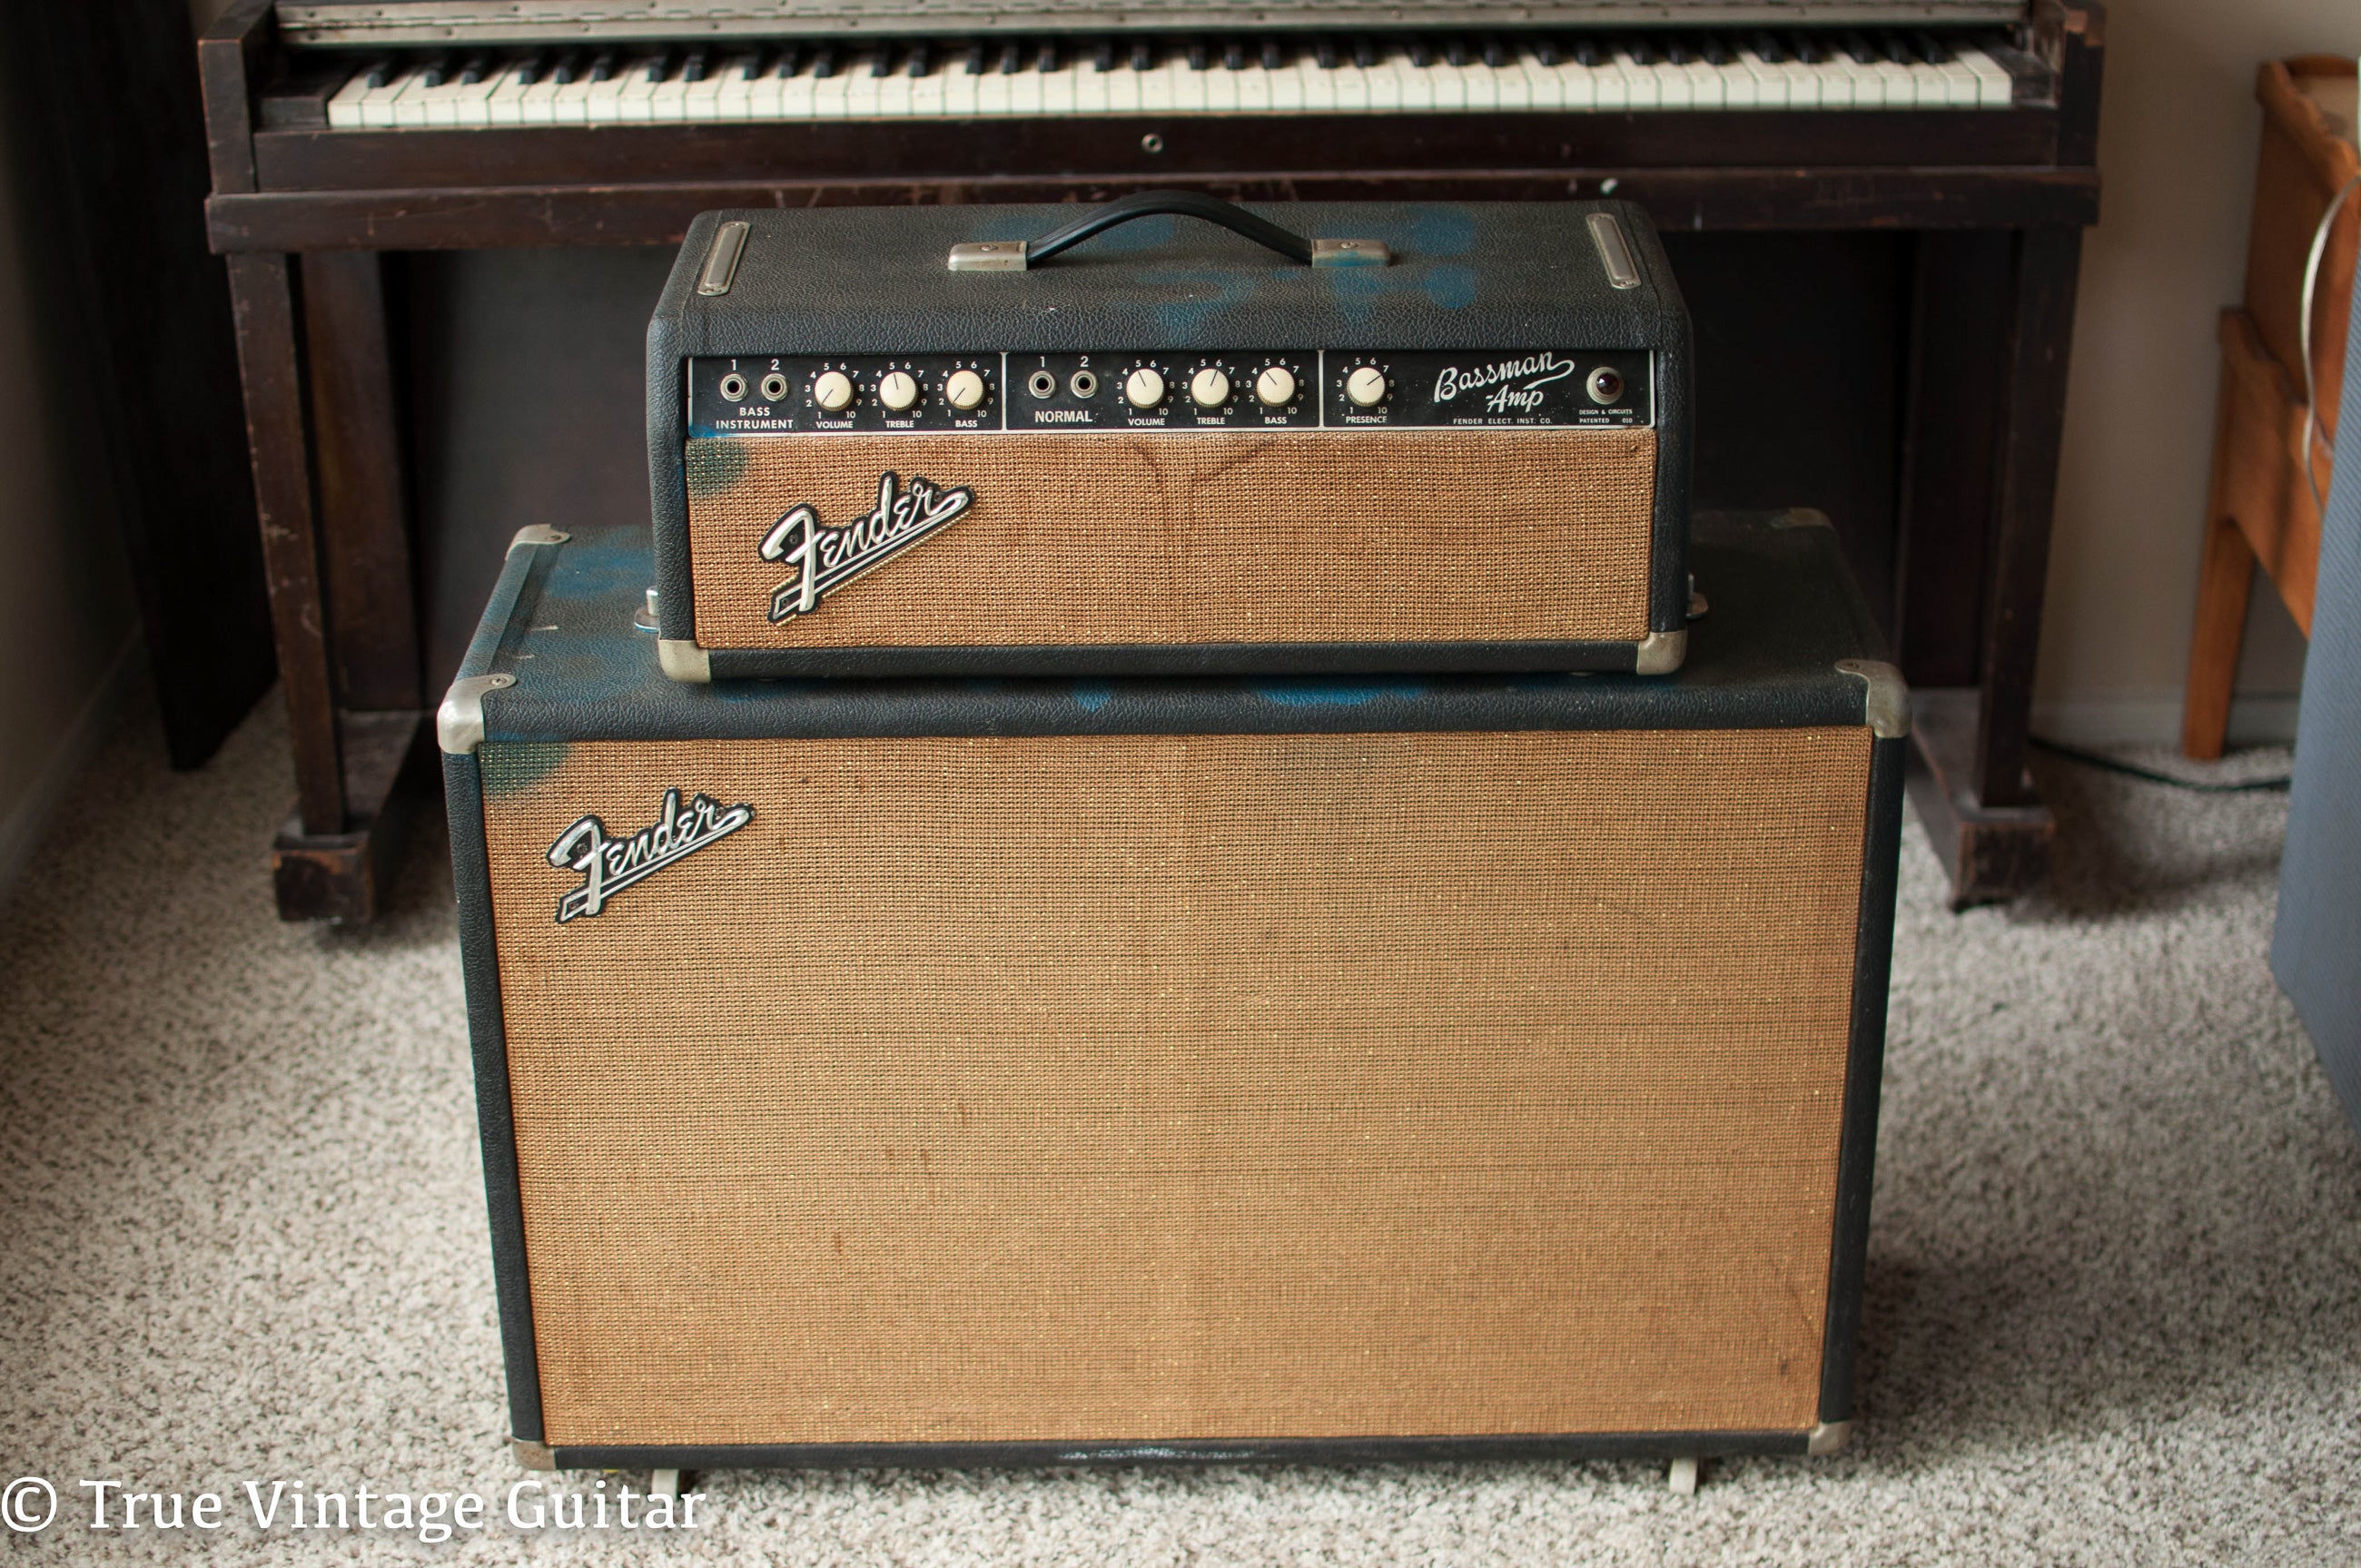 Vintage 1964 Fender Bassman guitar amp amplifier